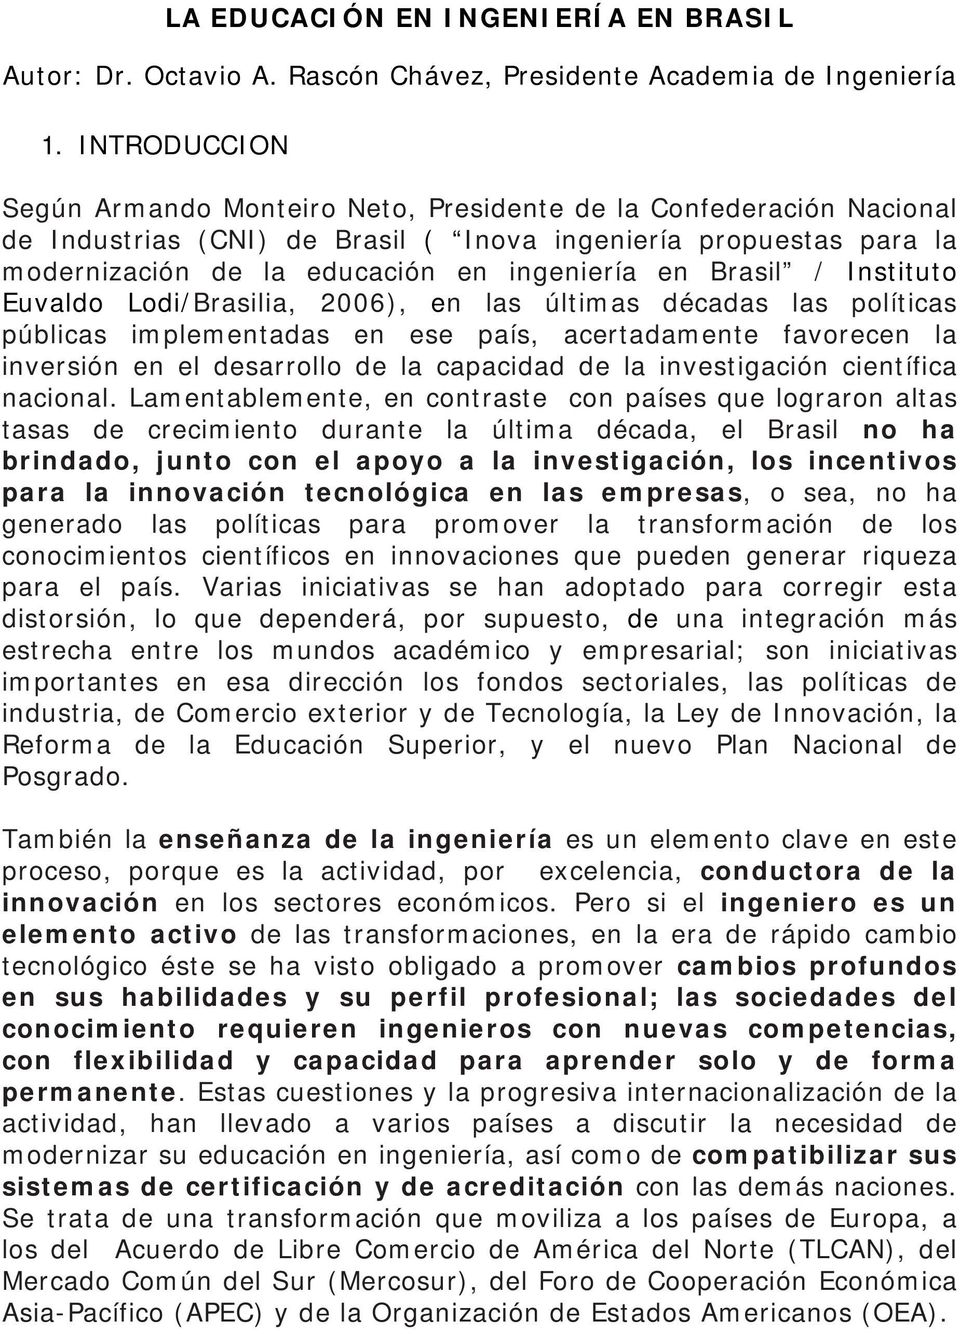 Brasil / Instituto Euvaldo Lodi/Brasilia, 2006), en las últimas décadas las políticas públicas implementadas en ese país, acertadamente favorecen la inversión en el desarrollo de la capacidad de la